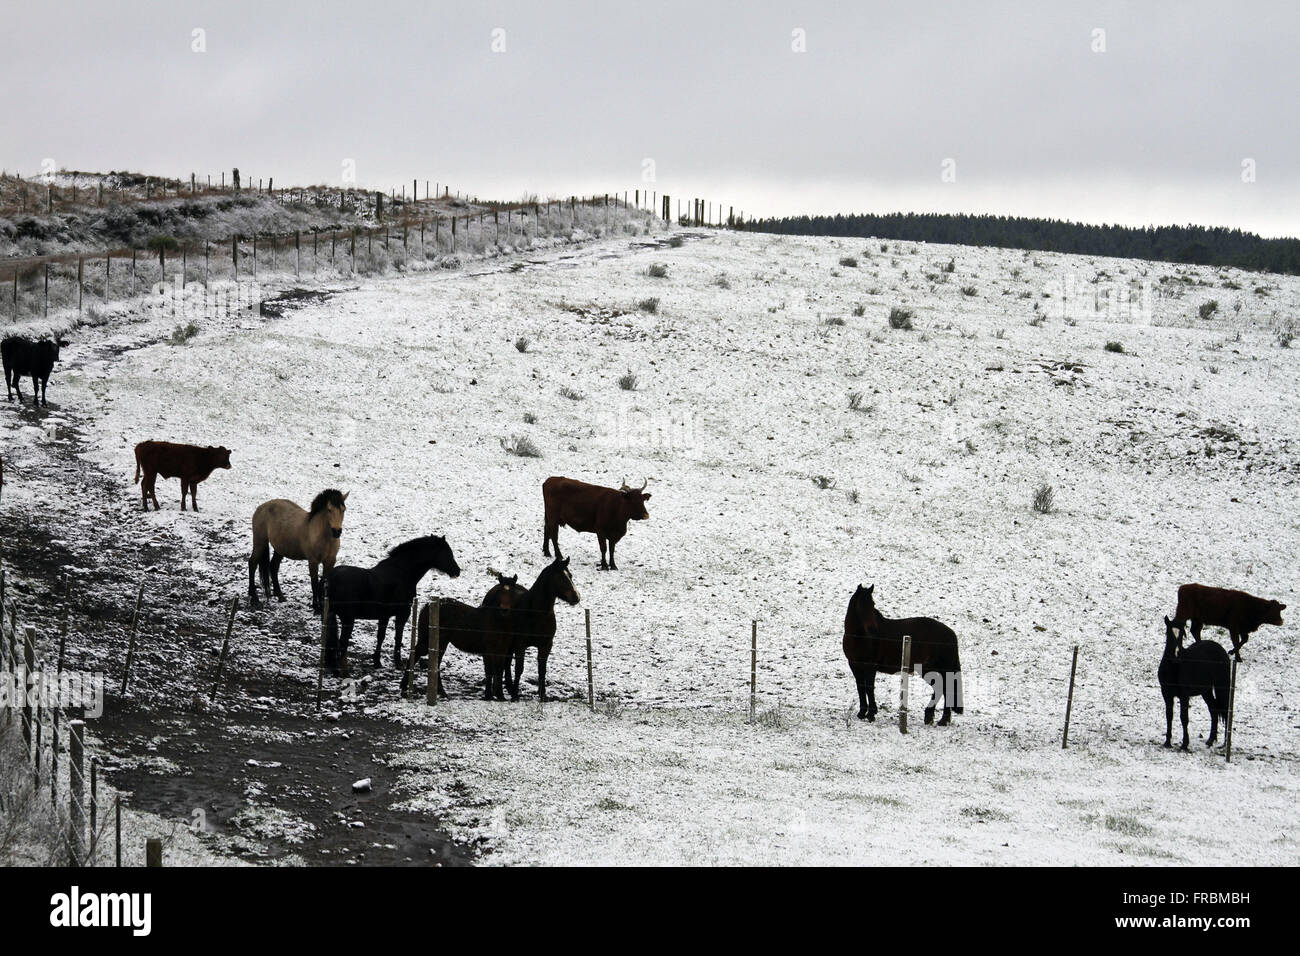 Cattle grazing in snow covered field - landscape characteristic of Campos de Cima da Serra Stock Photo